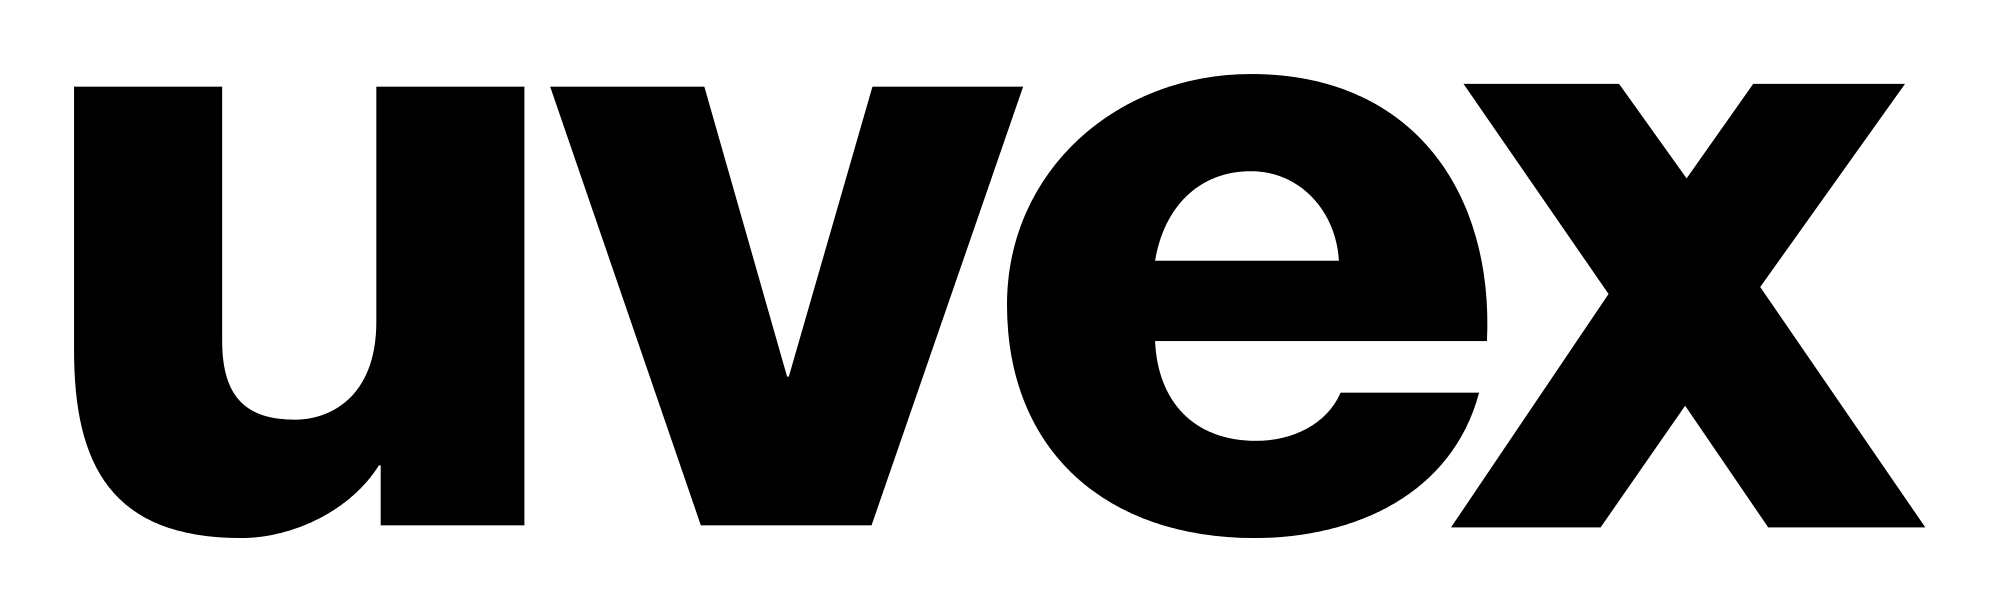 uvex logo in black.